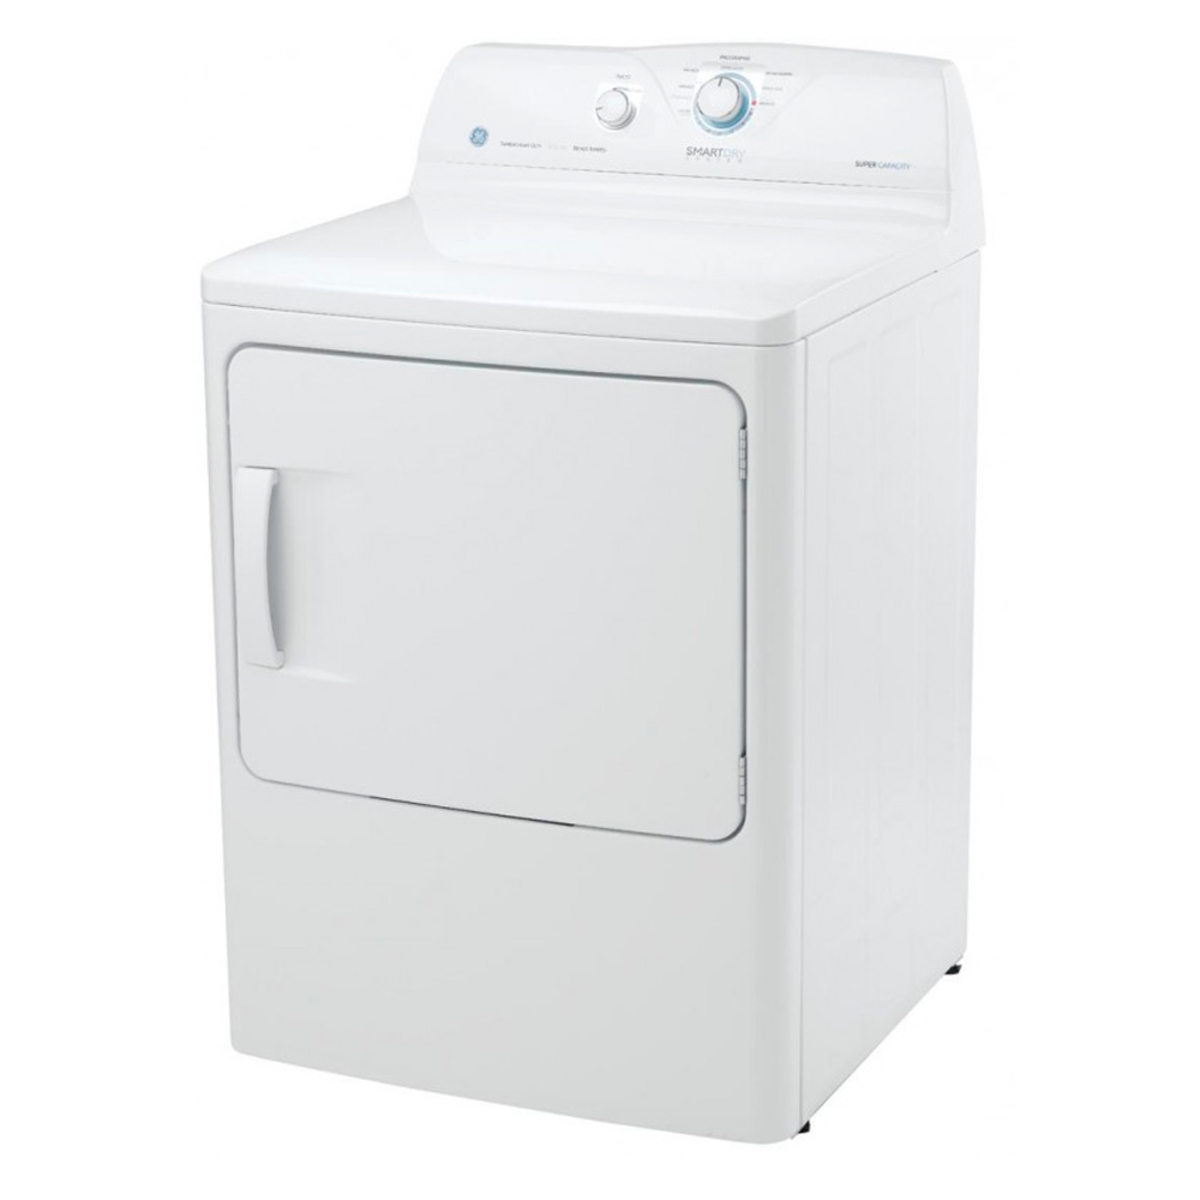 Cuánto consume una lavadora secadora?